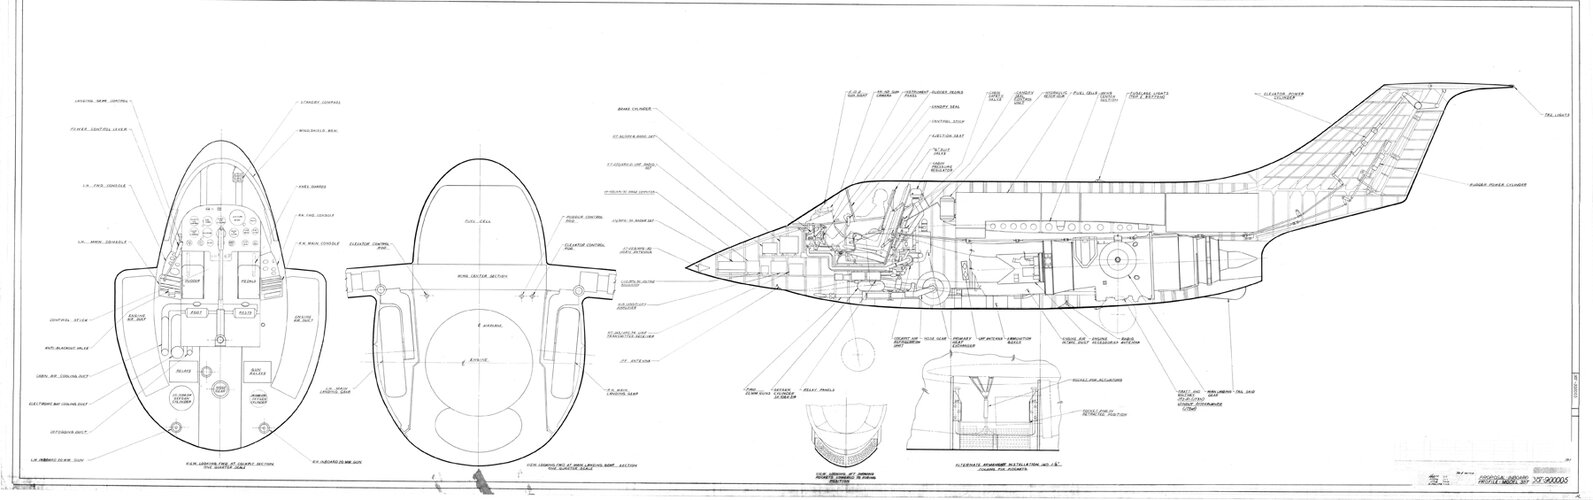 x-Temco-Model-38T-Proposal-Inboard-Profile-38T-900005-Feb-23-53resized.jpg